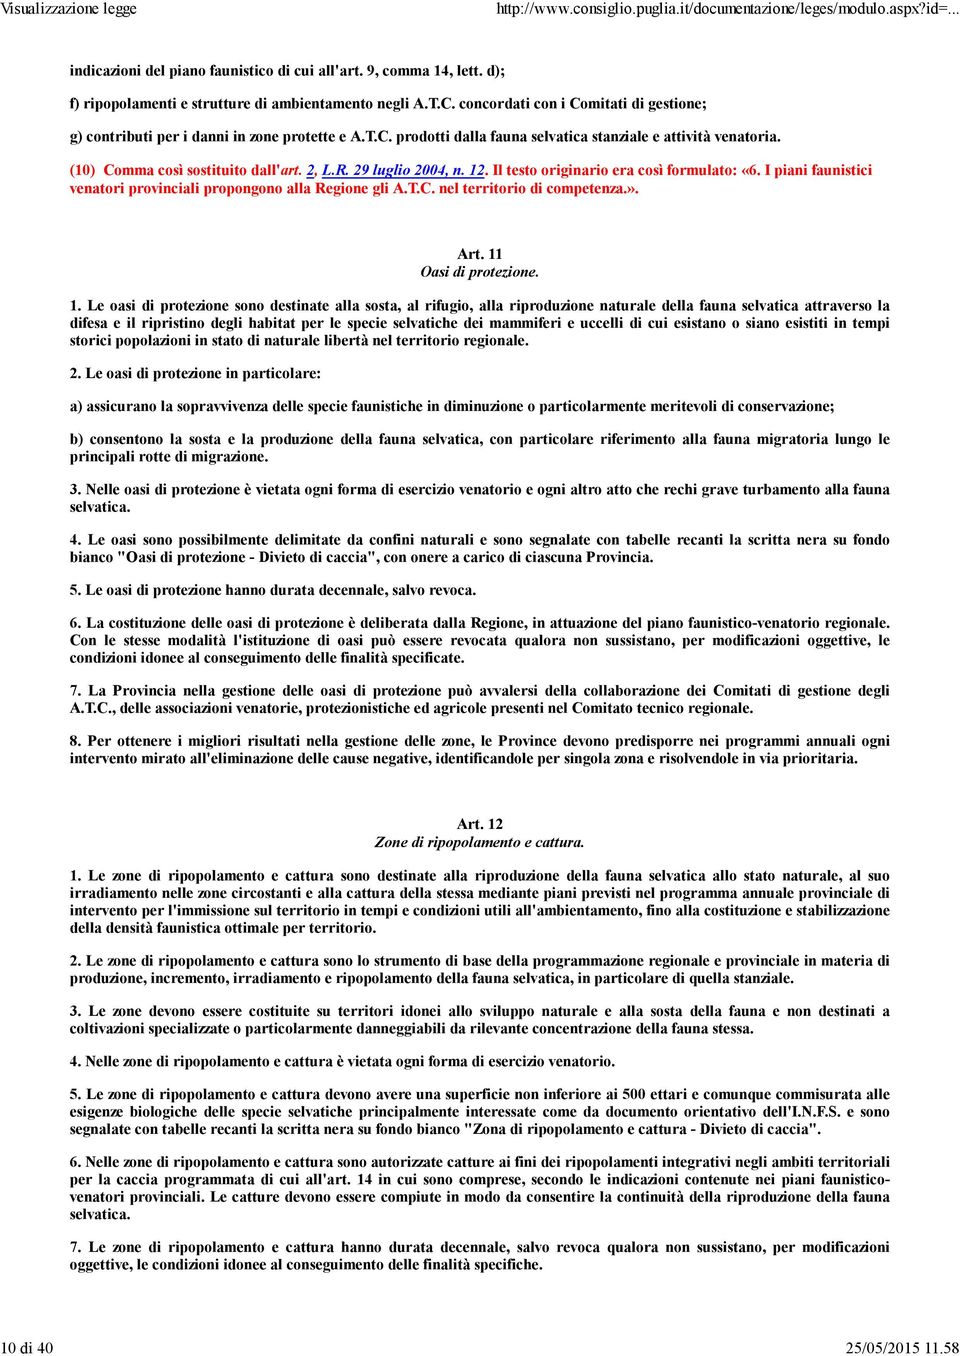 29 luglio 2004, n. 12. Il testo originario era così formulato: «6. I piani faunistici venatori provinciali propongono alla Regione gli A.T.C. nel territorio di competenza.». Art.